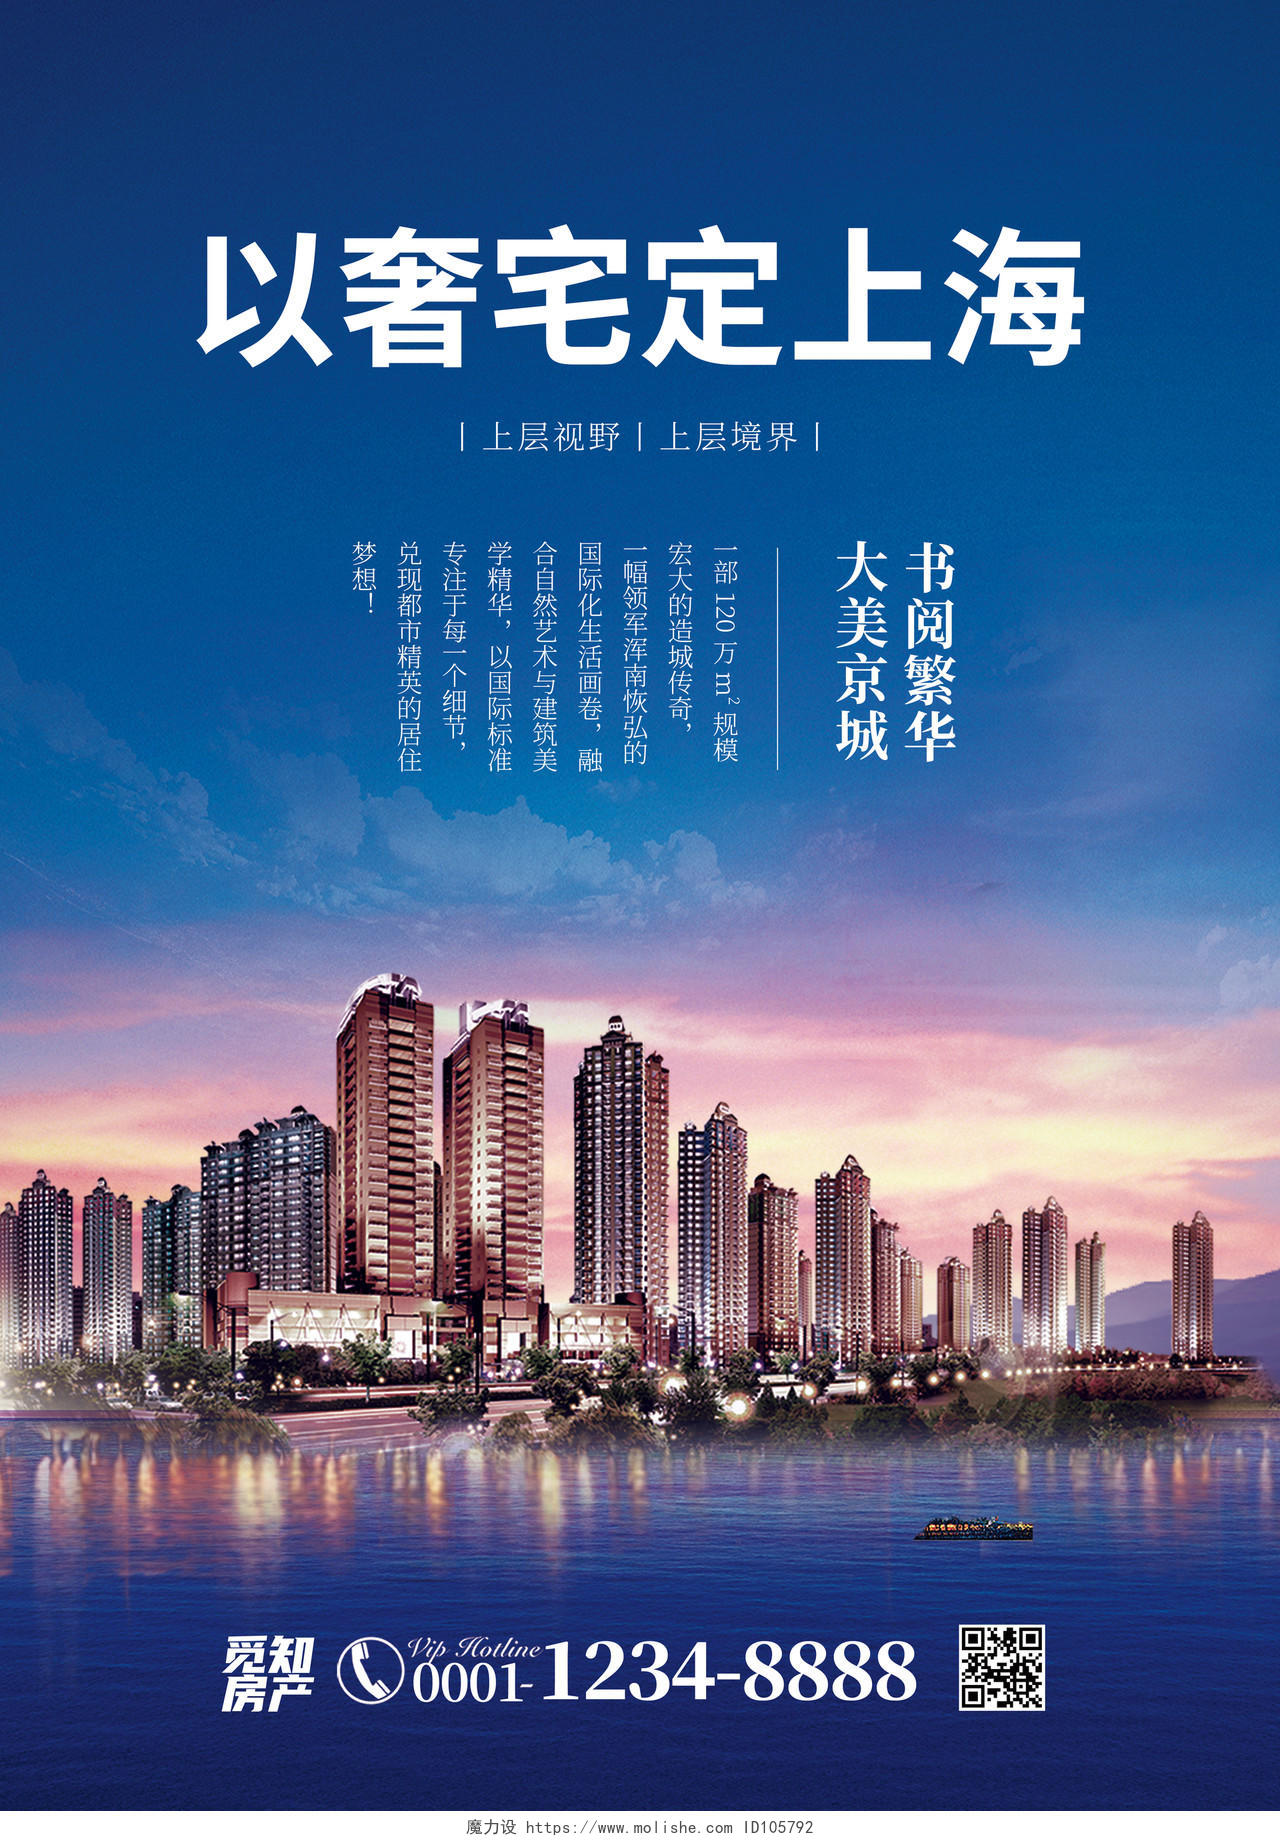 蓝色商务简约风以奢宅定上海房地产宣传单